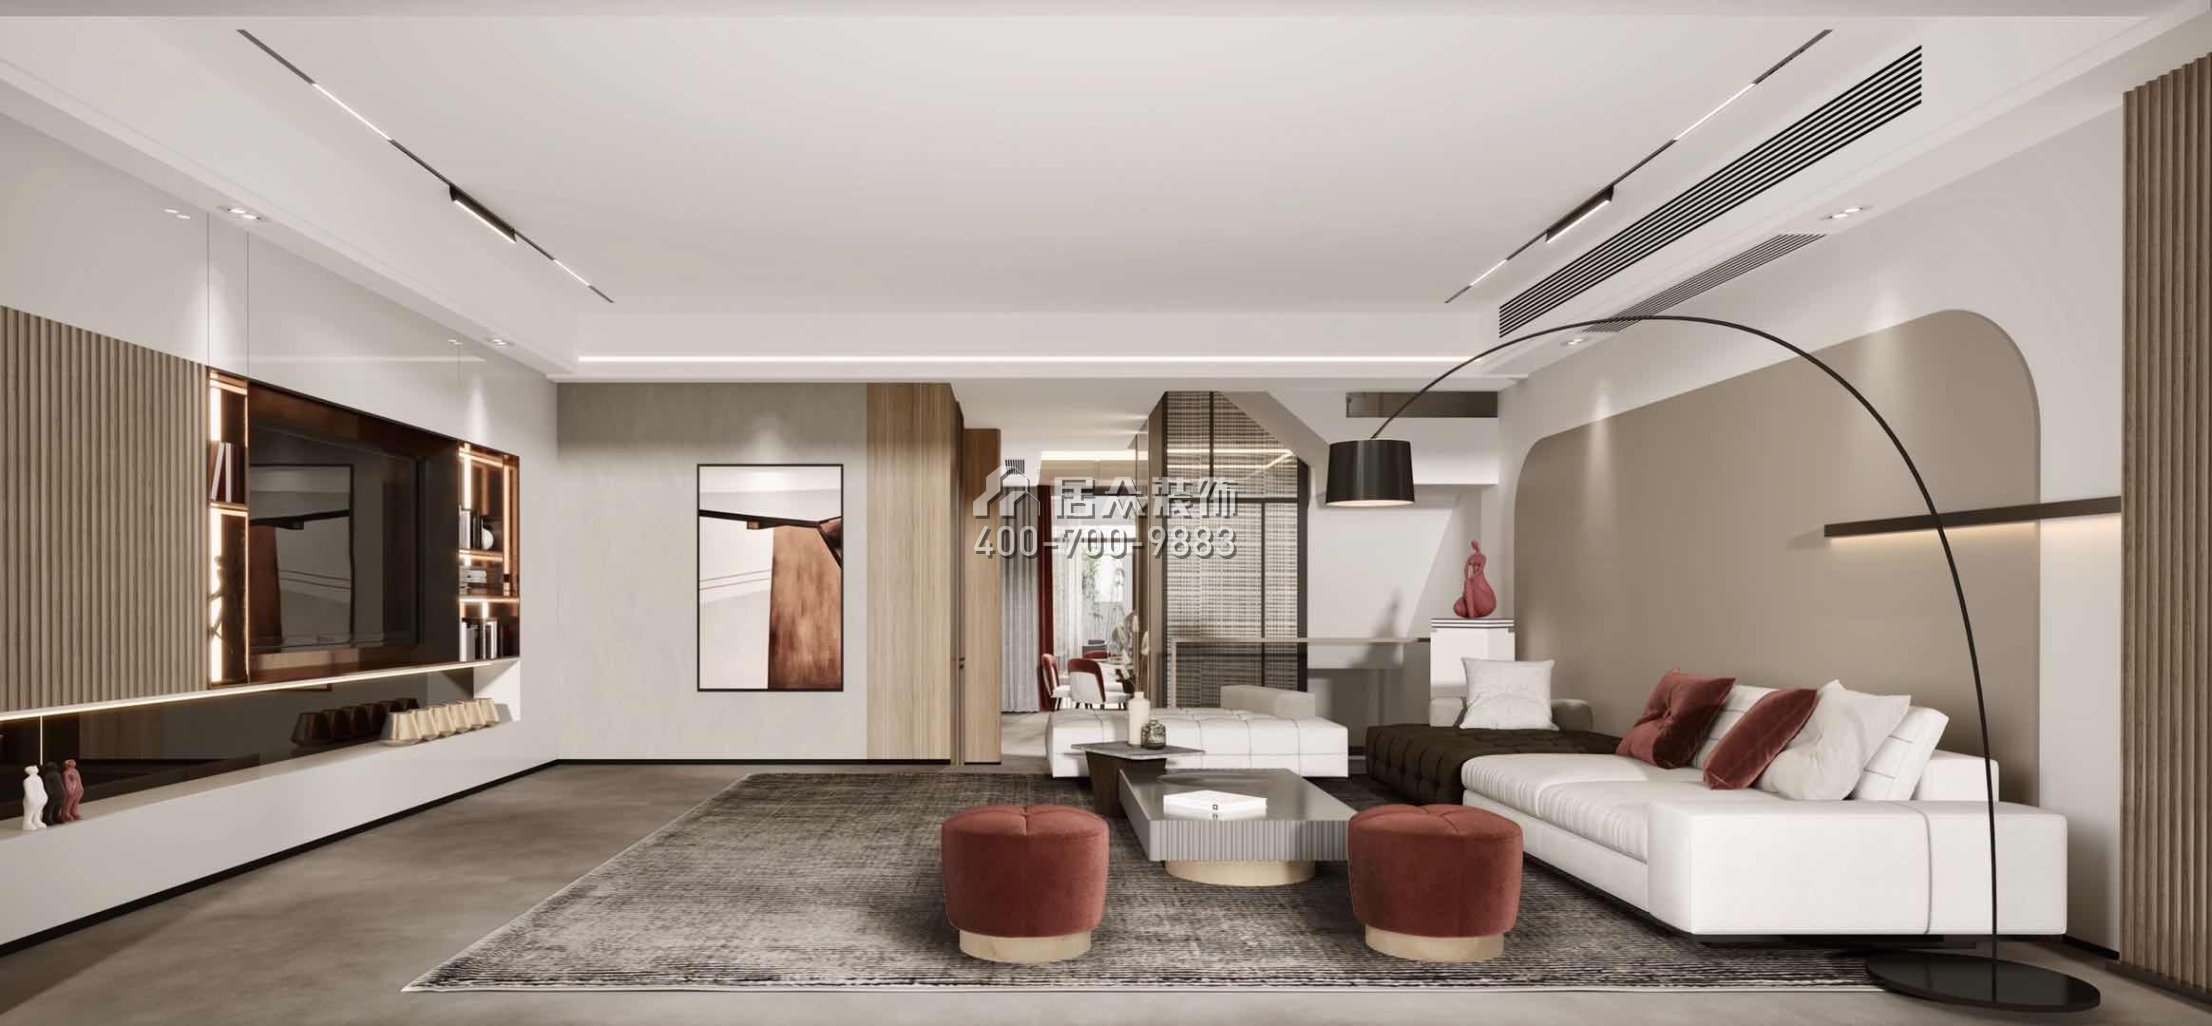 豐泰觀山碧水400平方米現代簡約風格別墅戶型客廳裝修效果圖